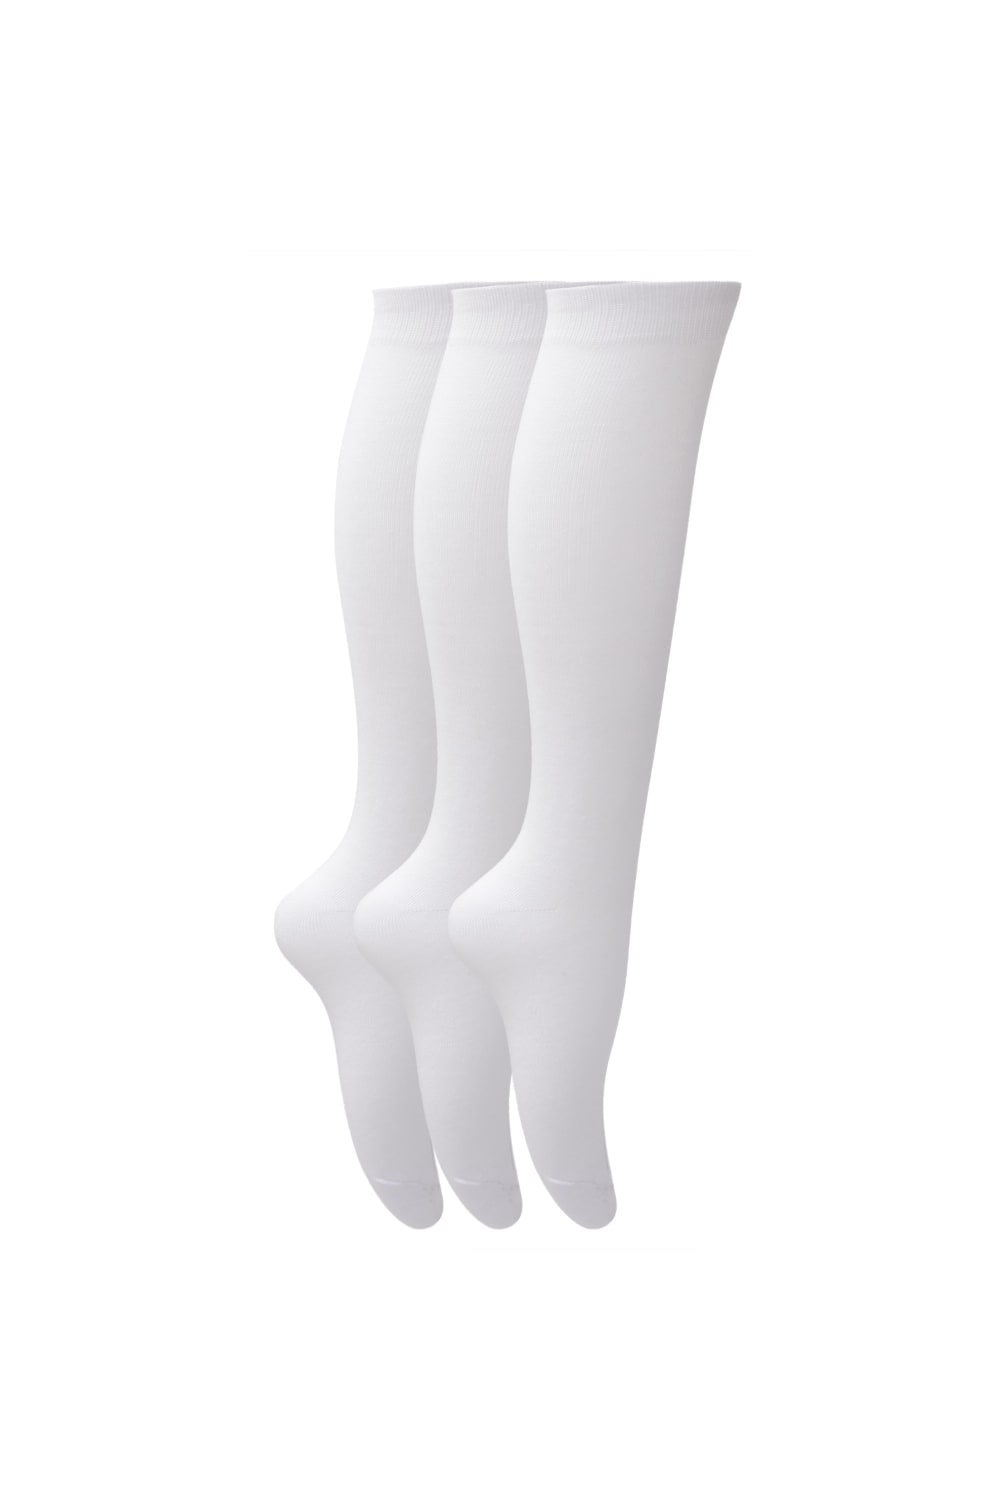 Childrens Girls Plain Knee High School Socks (Pack Of 3) (White)